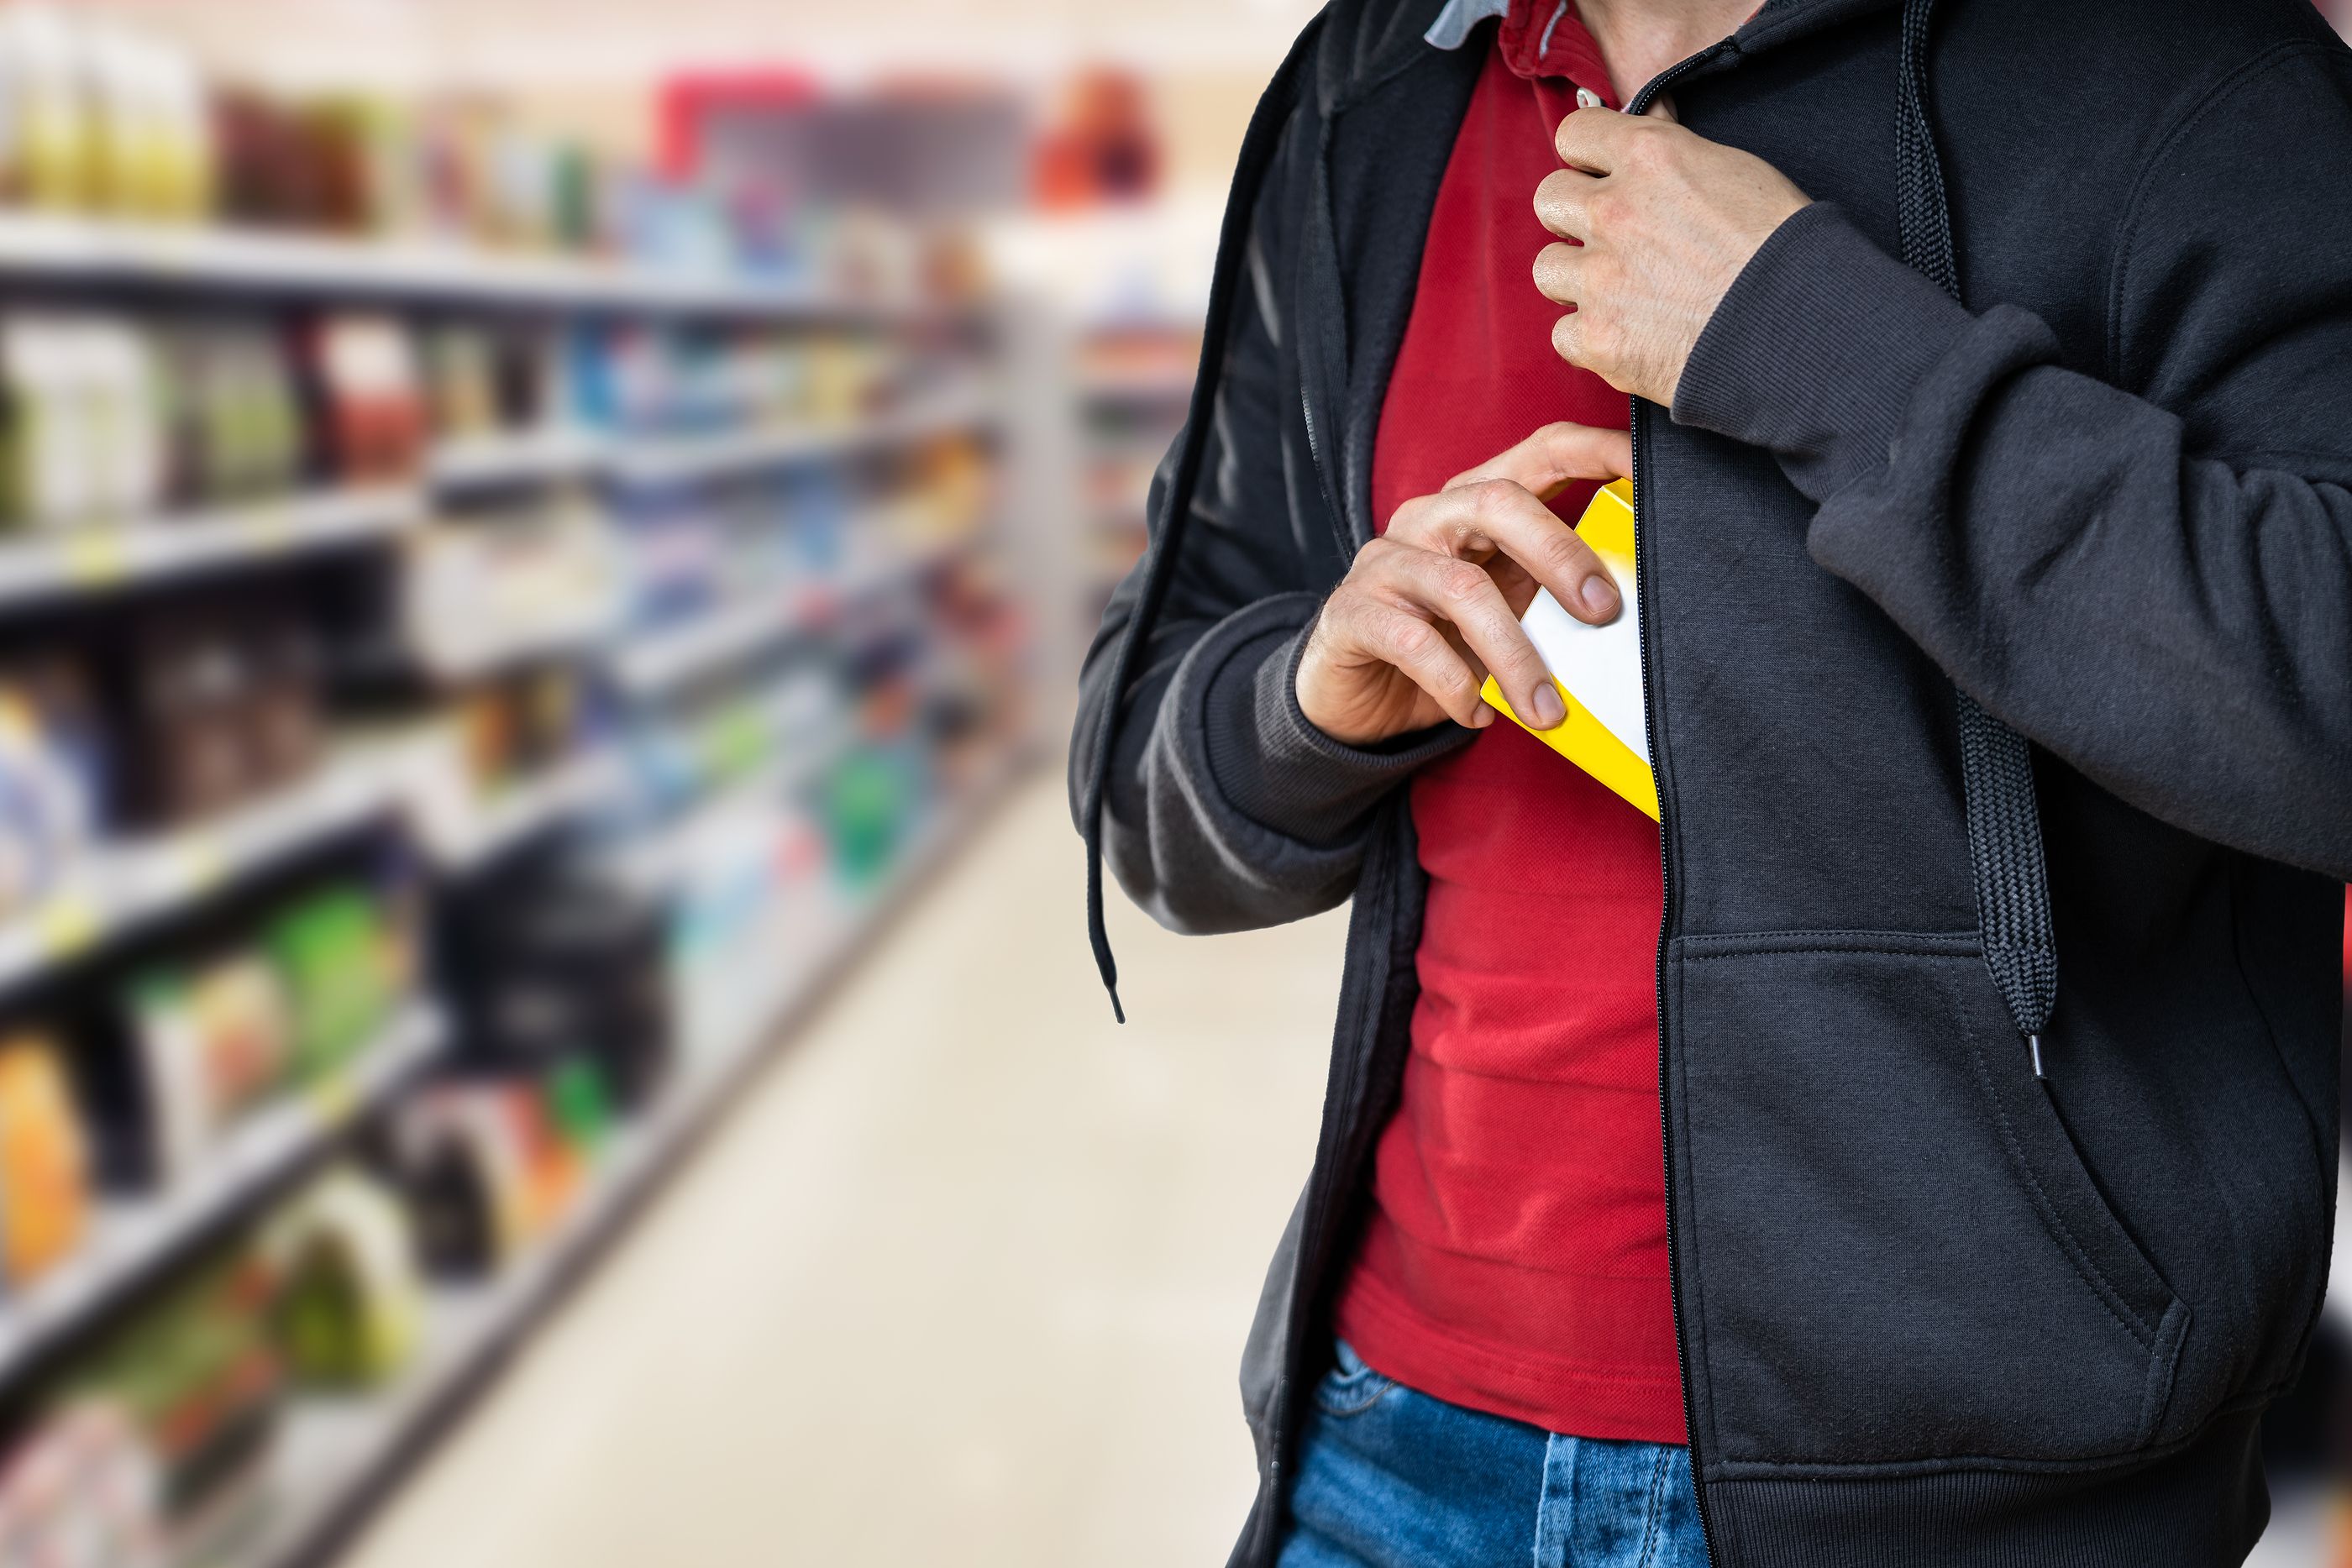 Los productos más robados en los supermercados: una lista que te sorprenderá